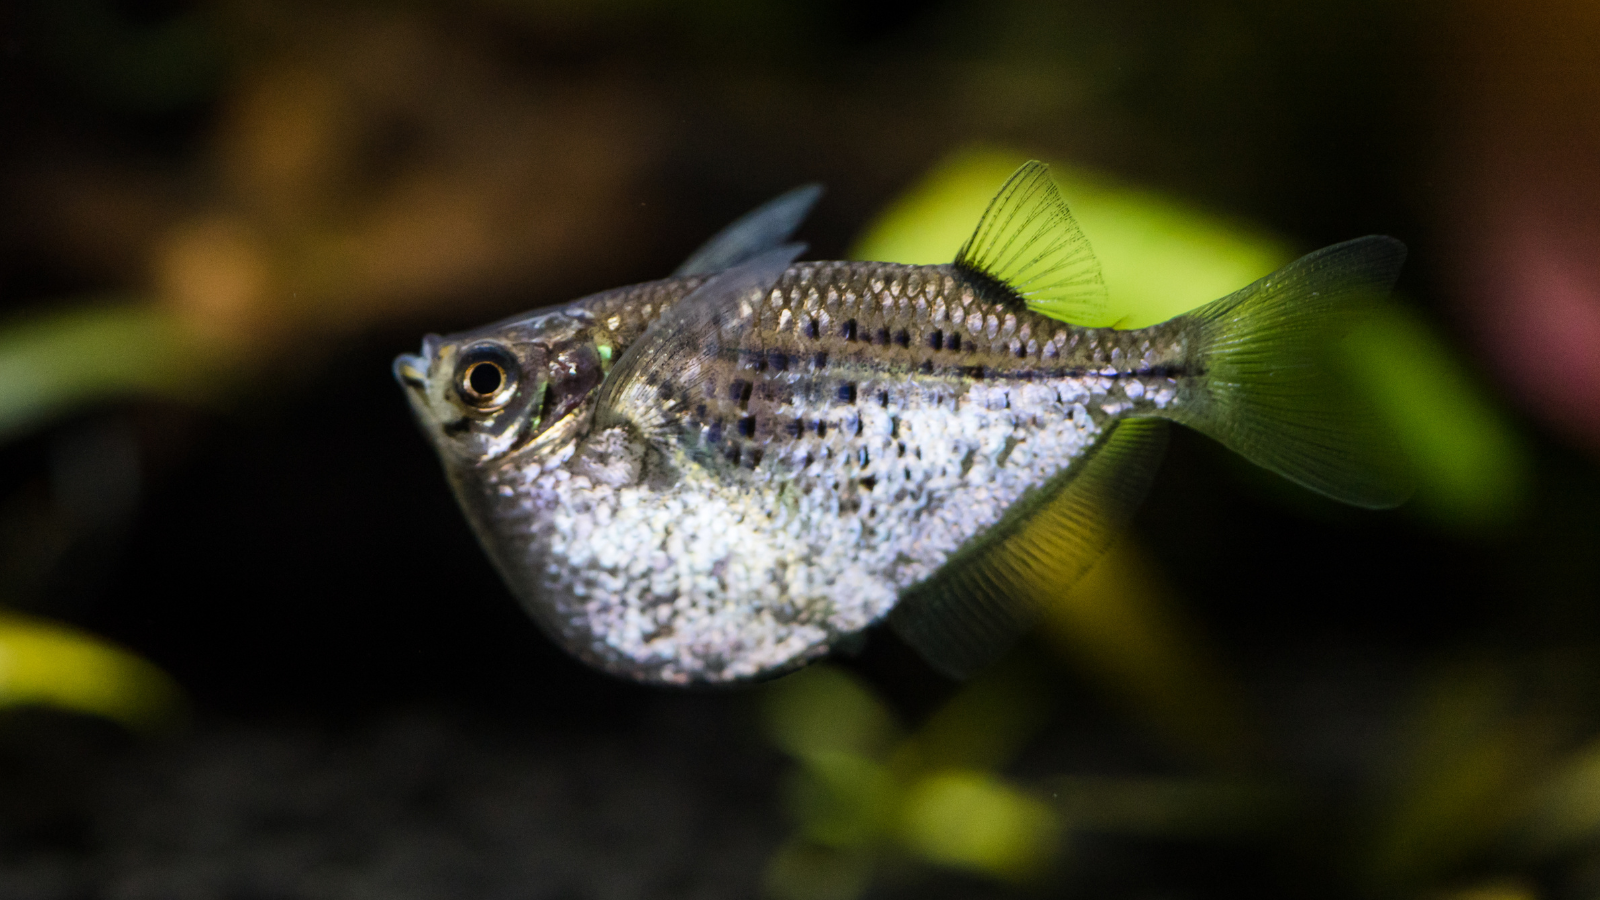 Hatchetfish are inusually shaped fish from the Characin family.